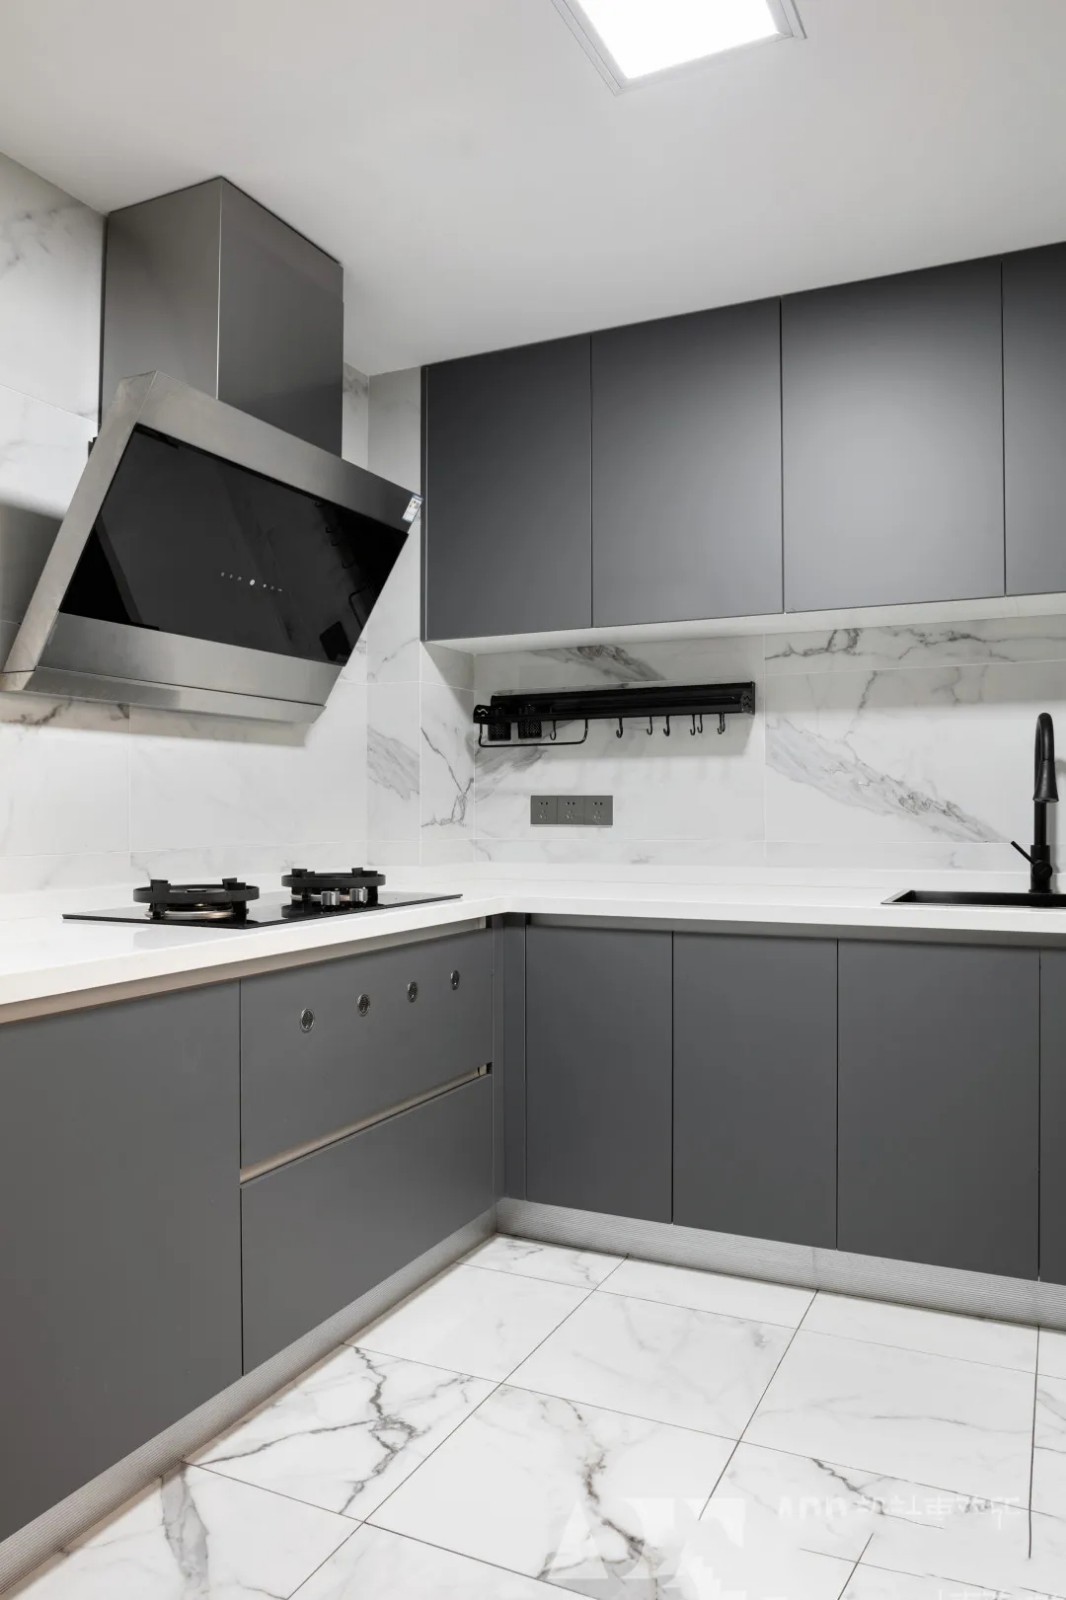 厨房白色的墙地砖和柜门的灰色形成鲜明的对比,既符合整体风格又不同